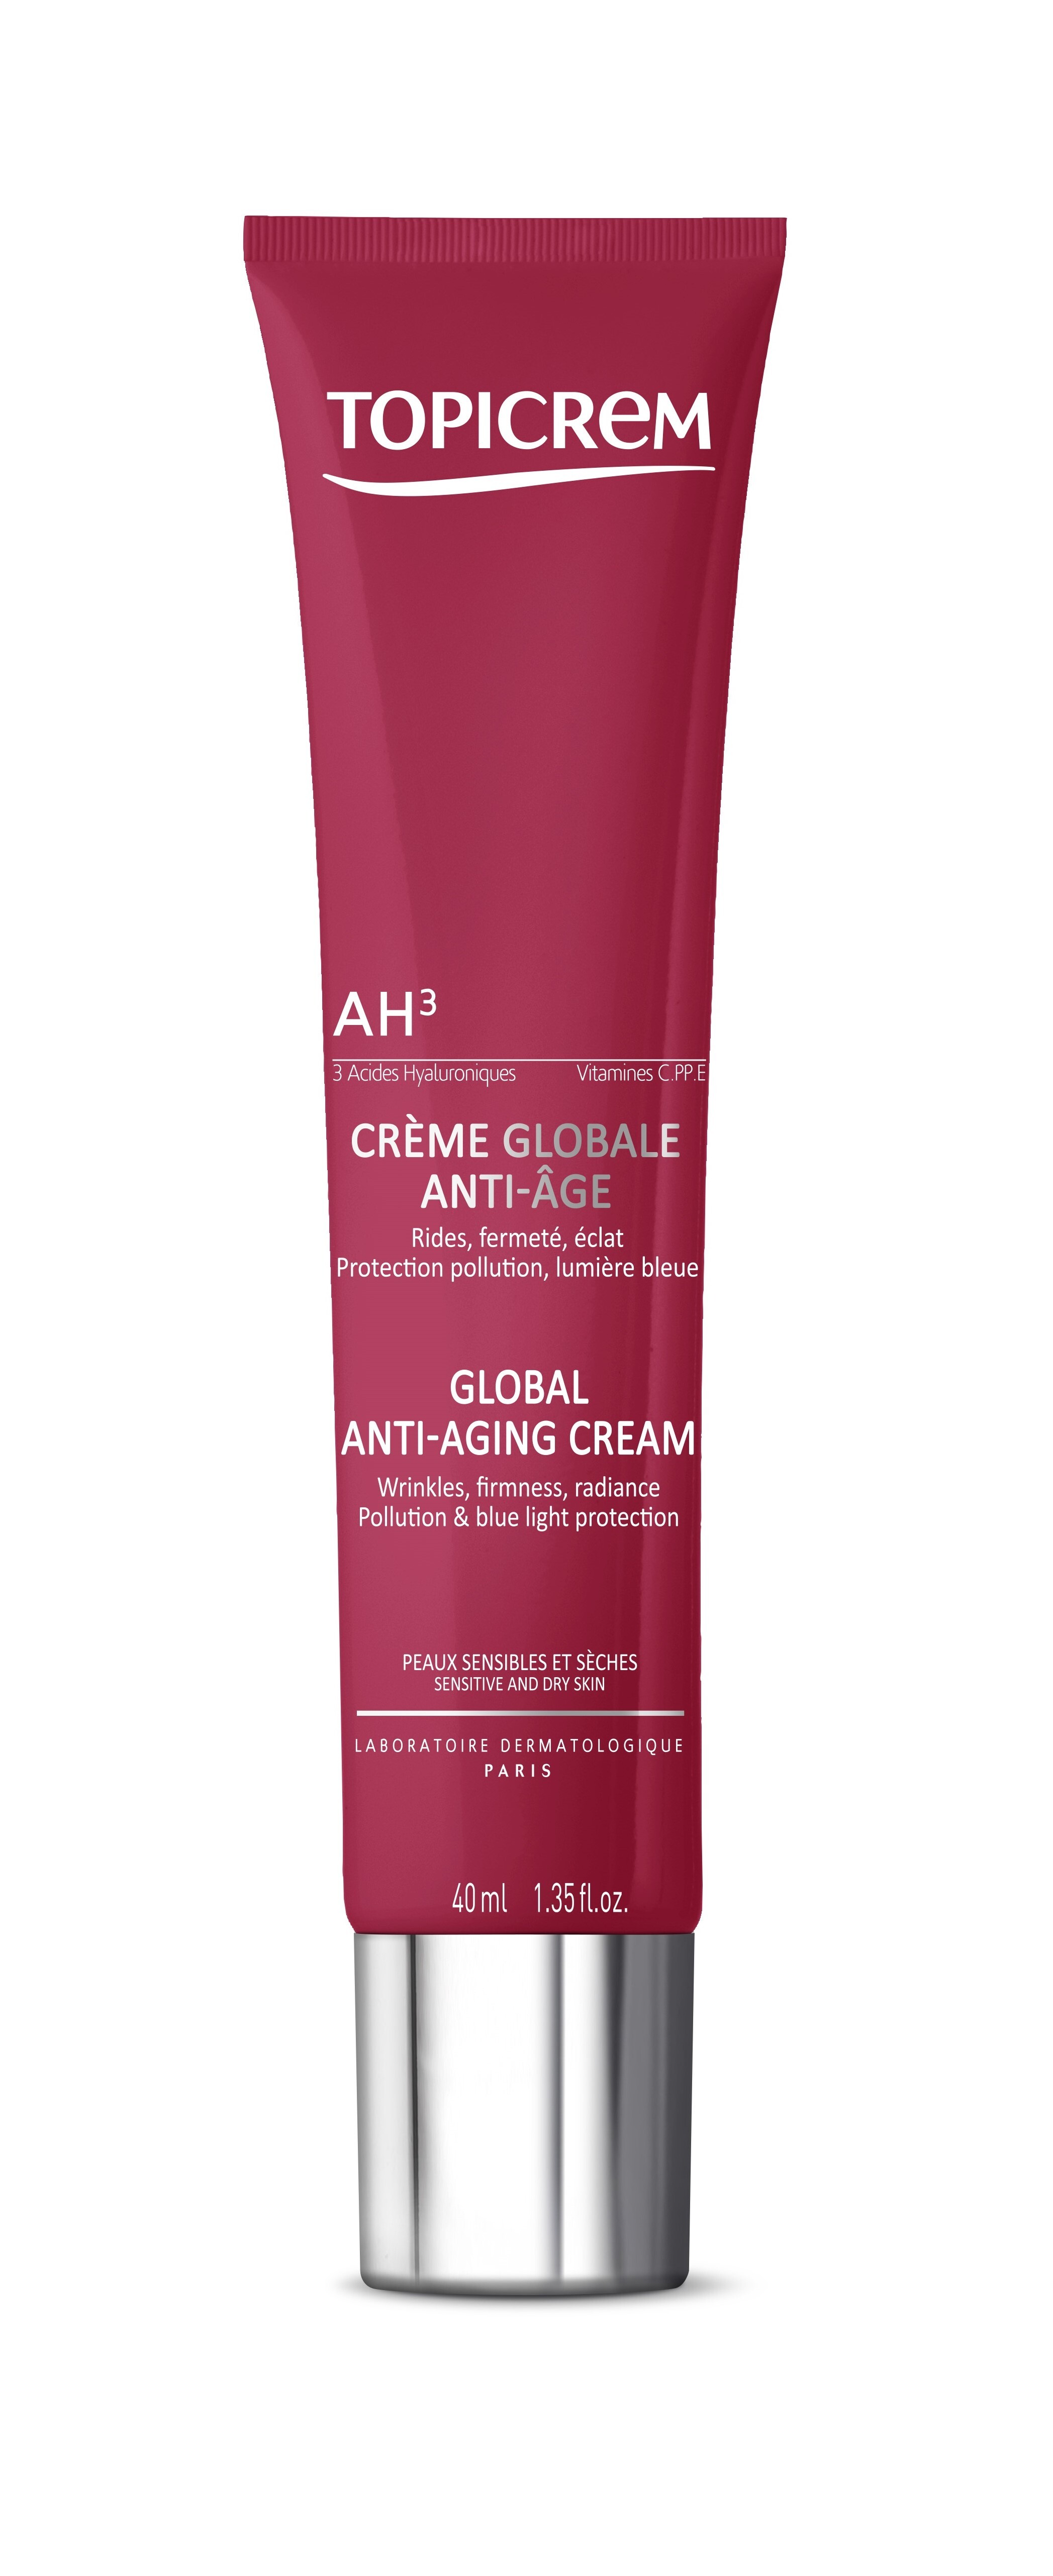 Topicrem AH3 Global Anti-Aging Cream